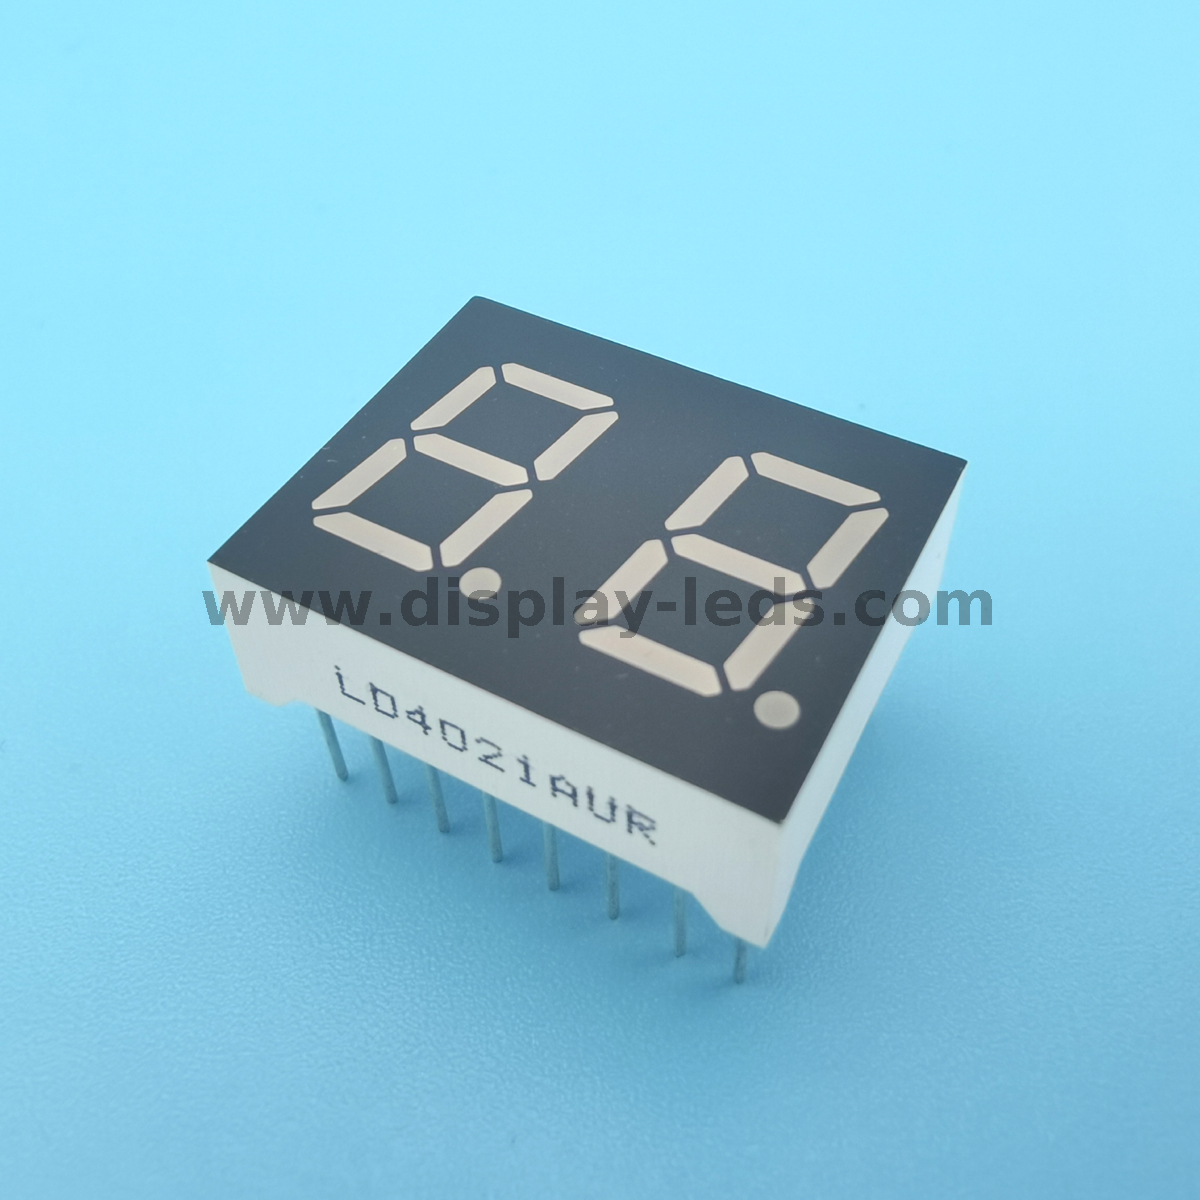 Serie LD4021G / H: pantalla de 0,4 pulgadas, 2 dígitos y 7 segmentos con circuito multiplex